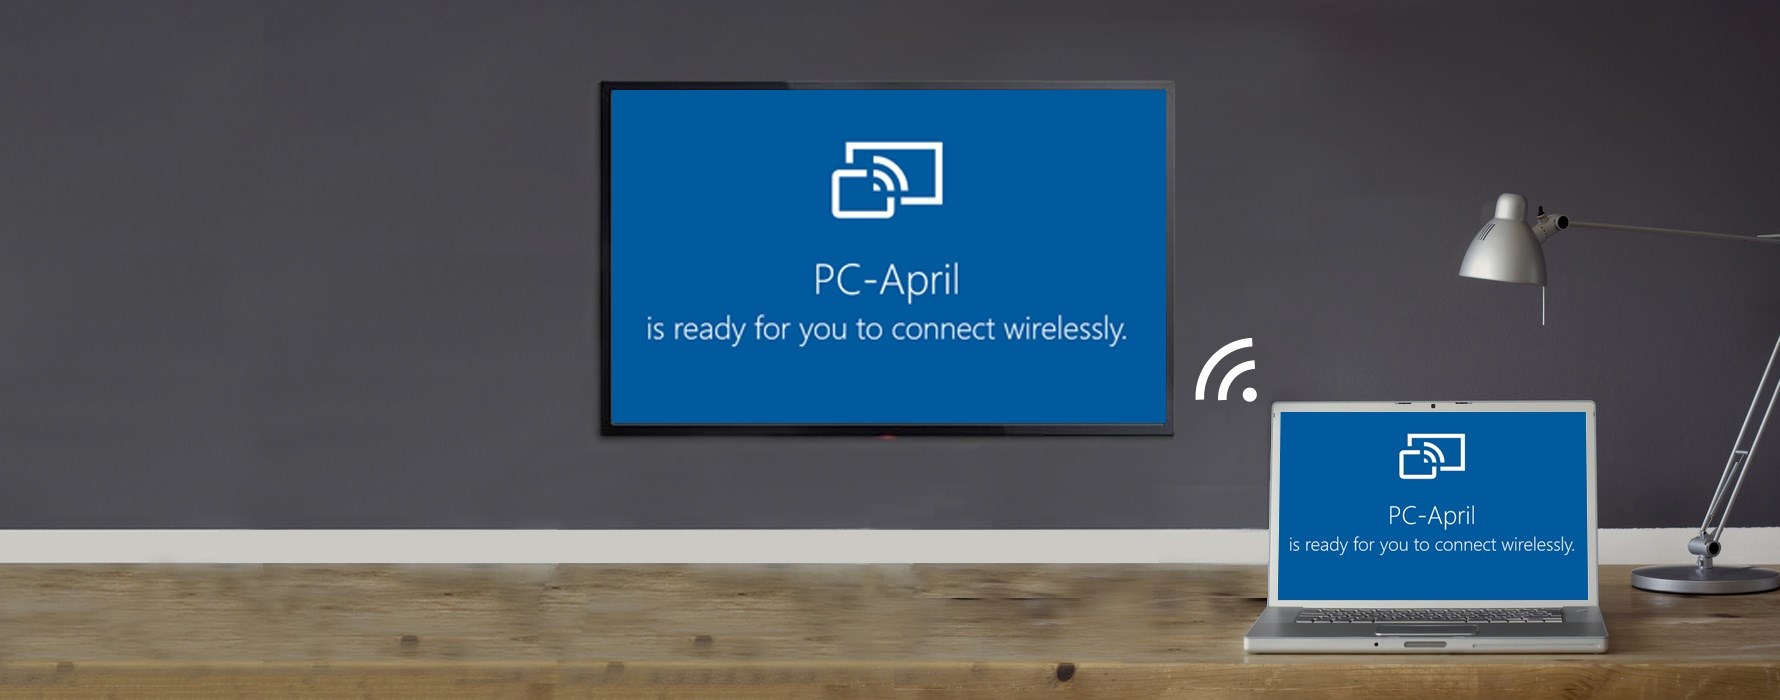 Miracast Connect uygulaması da Windows 10’dan kaldırıldı